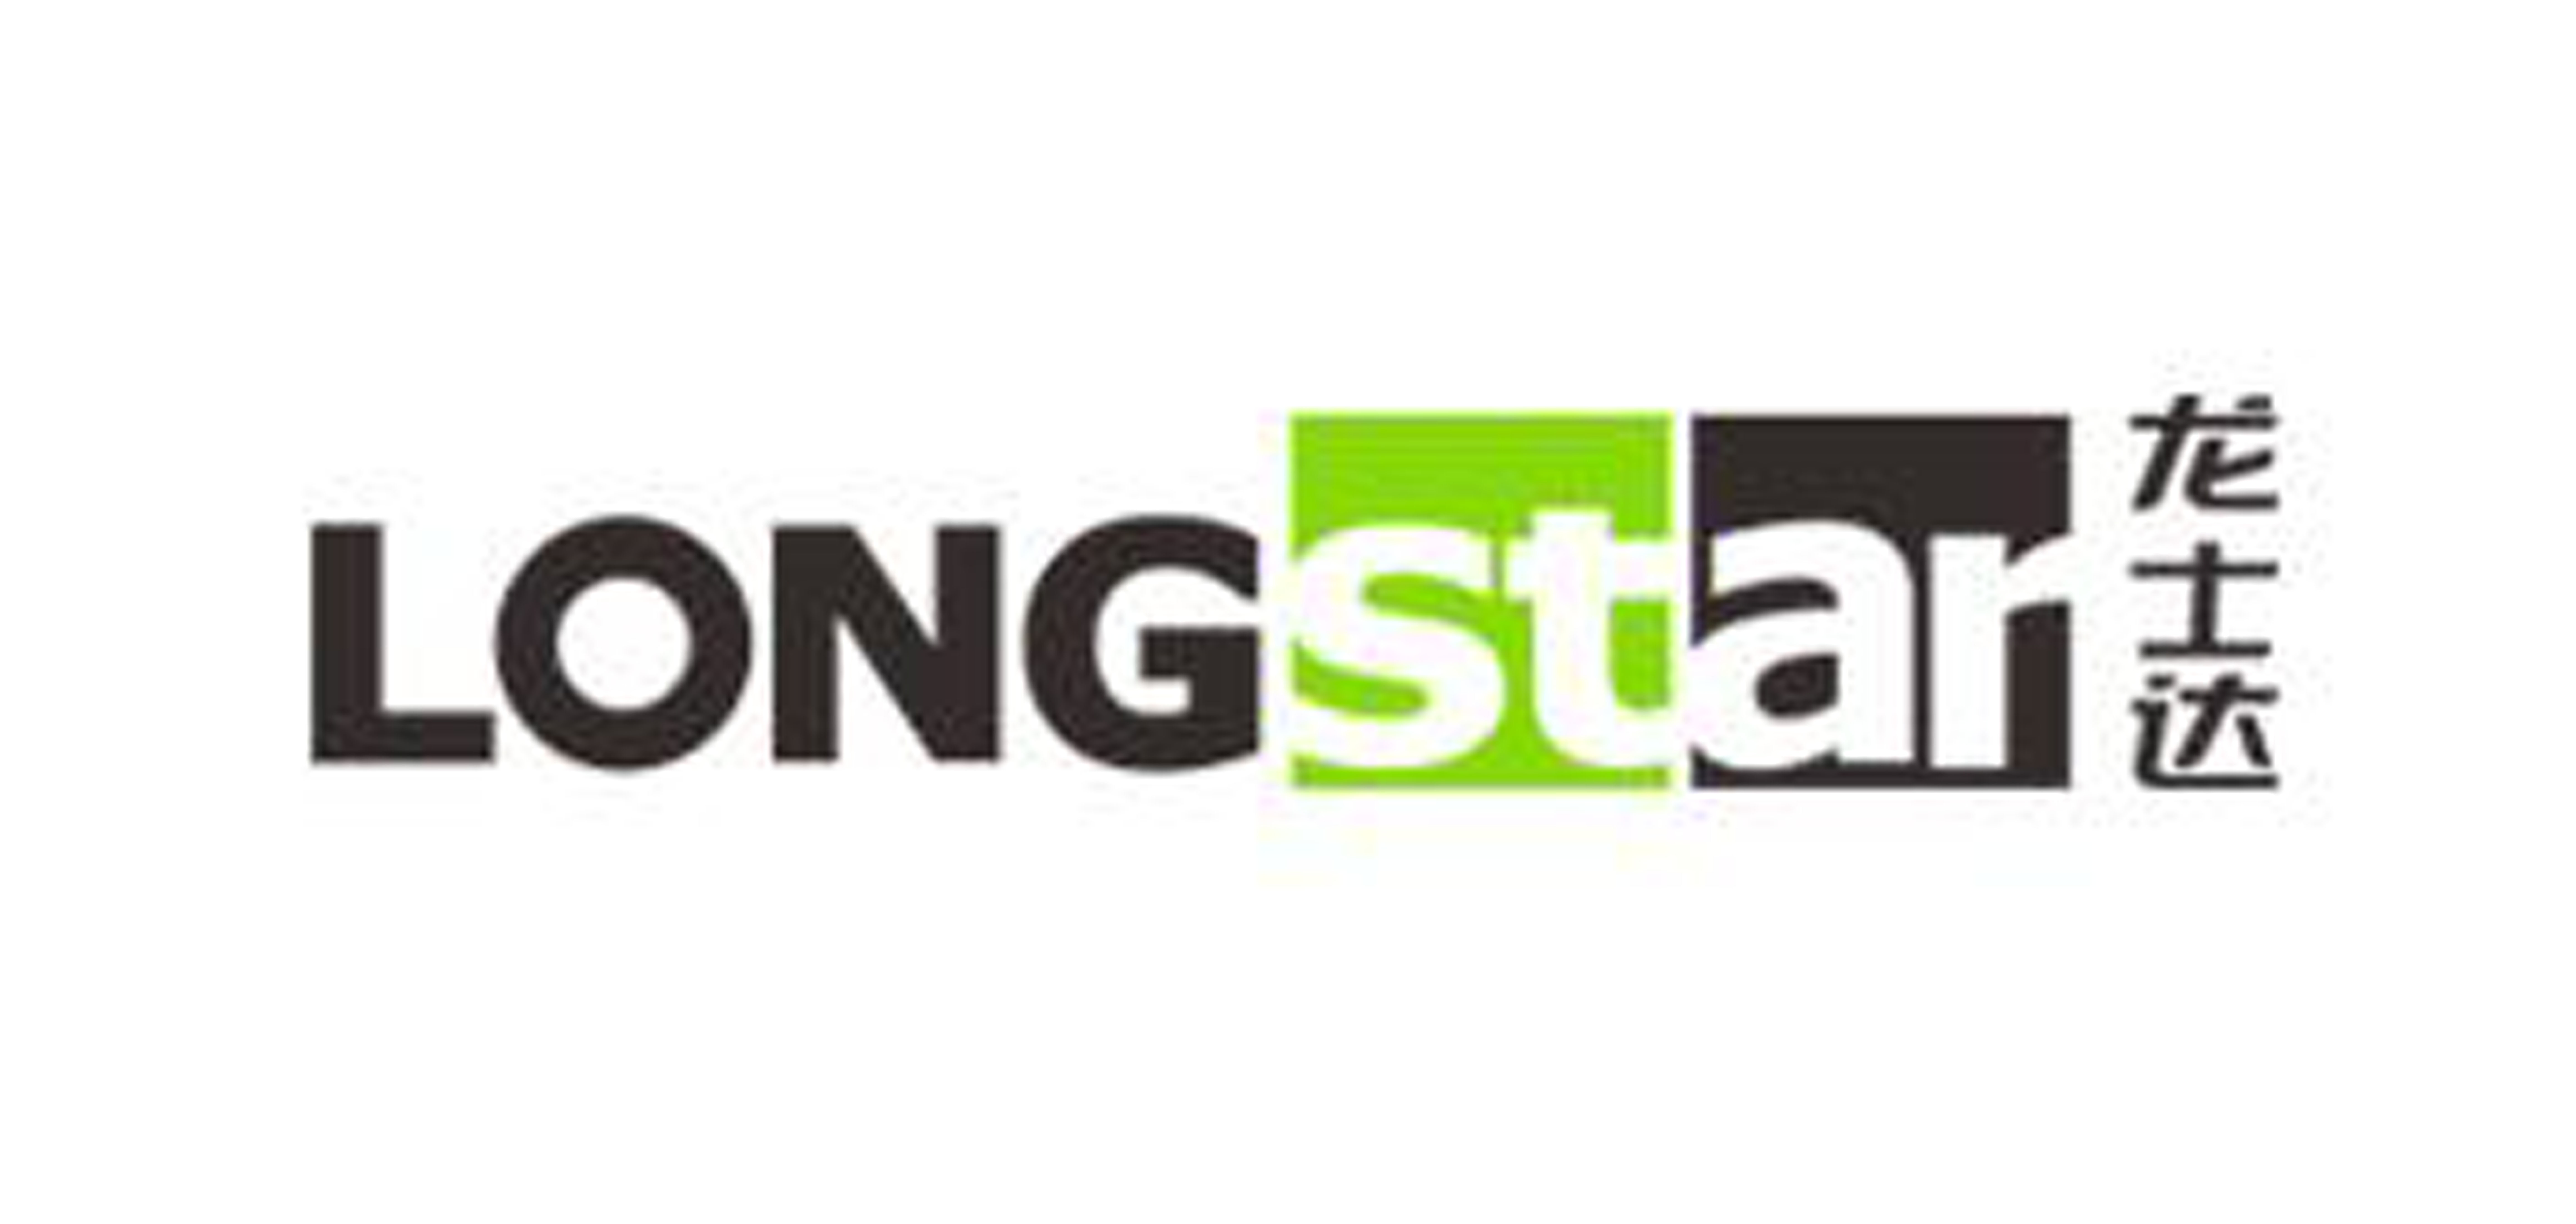 longstar是什么牌子_龙士达品牌怎么样?